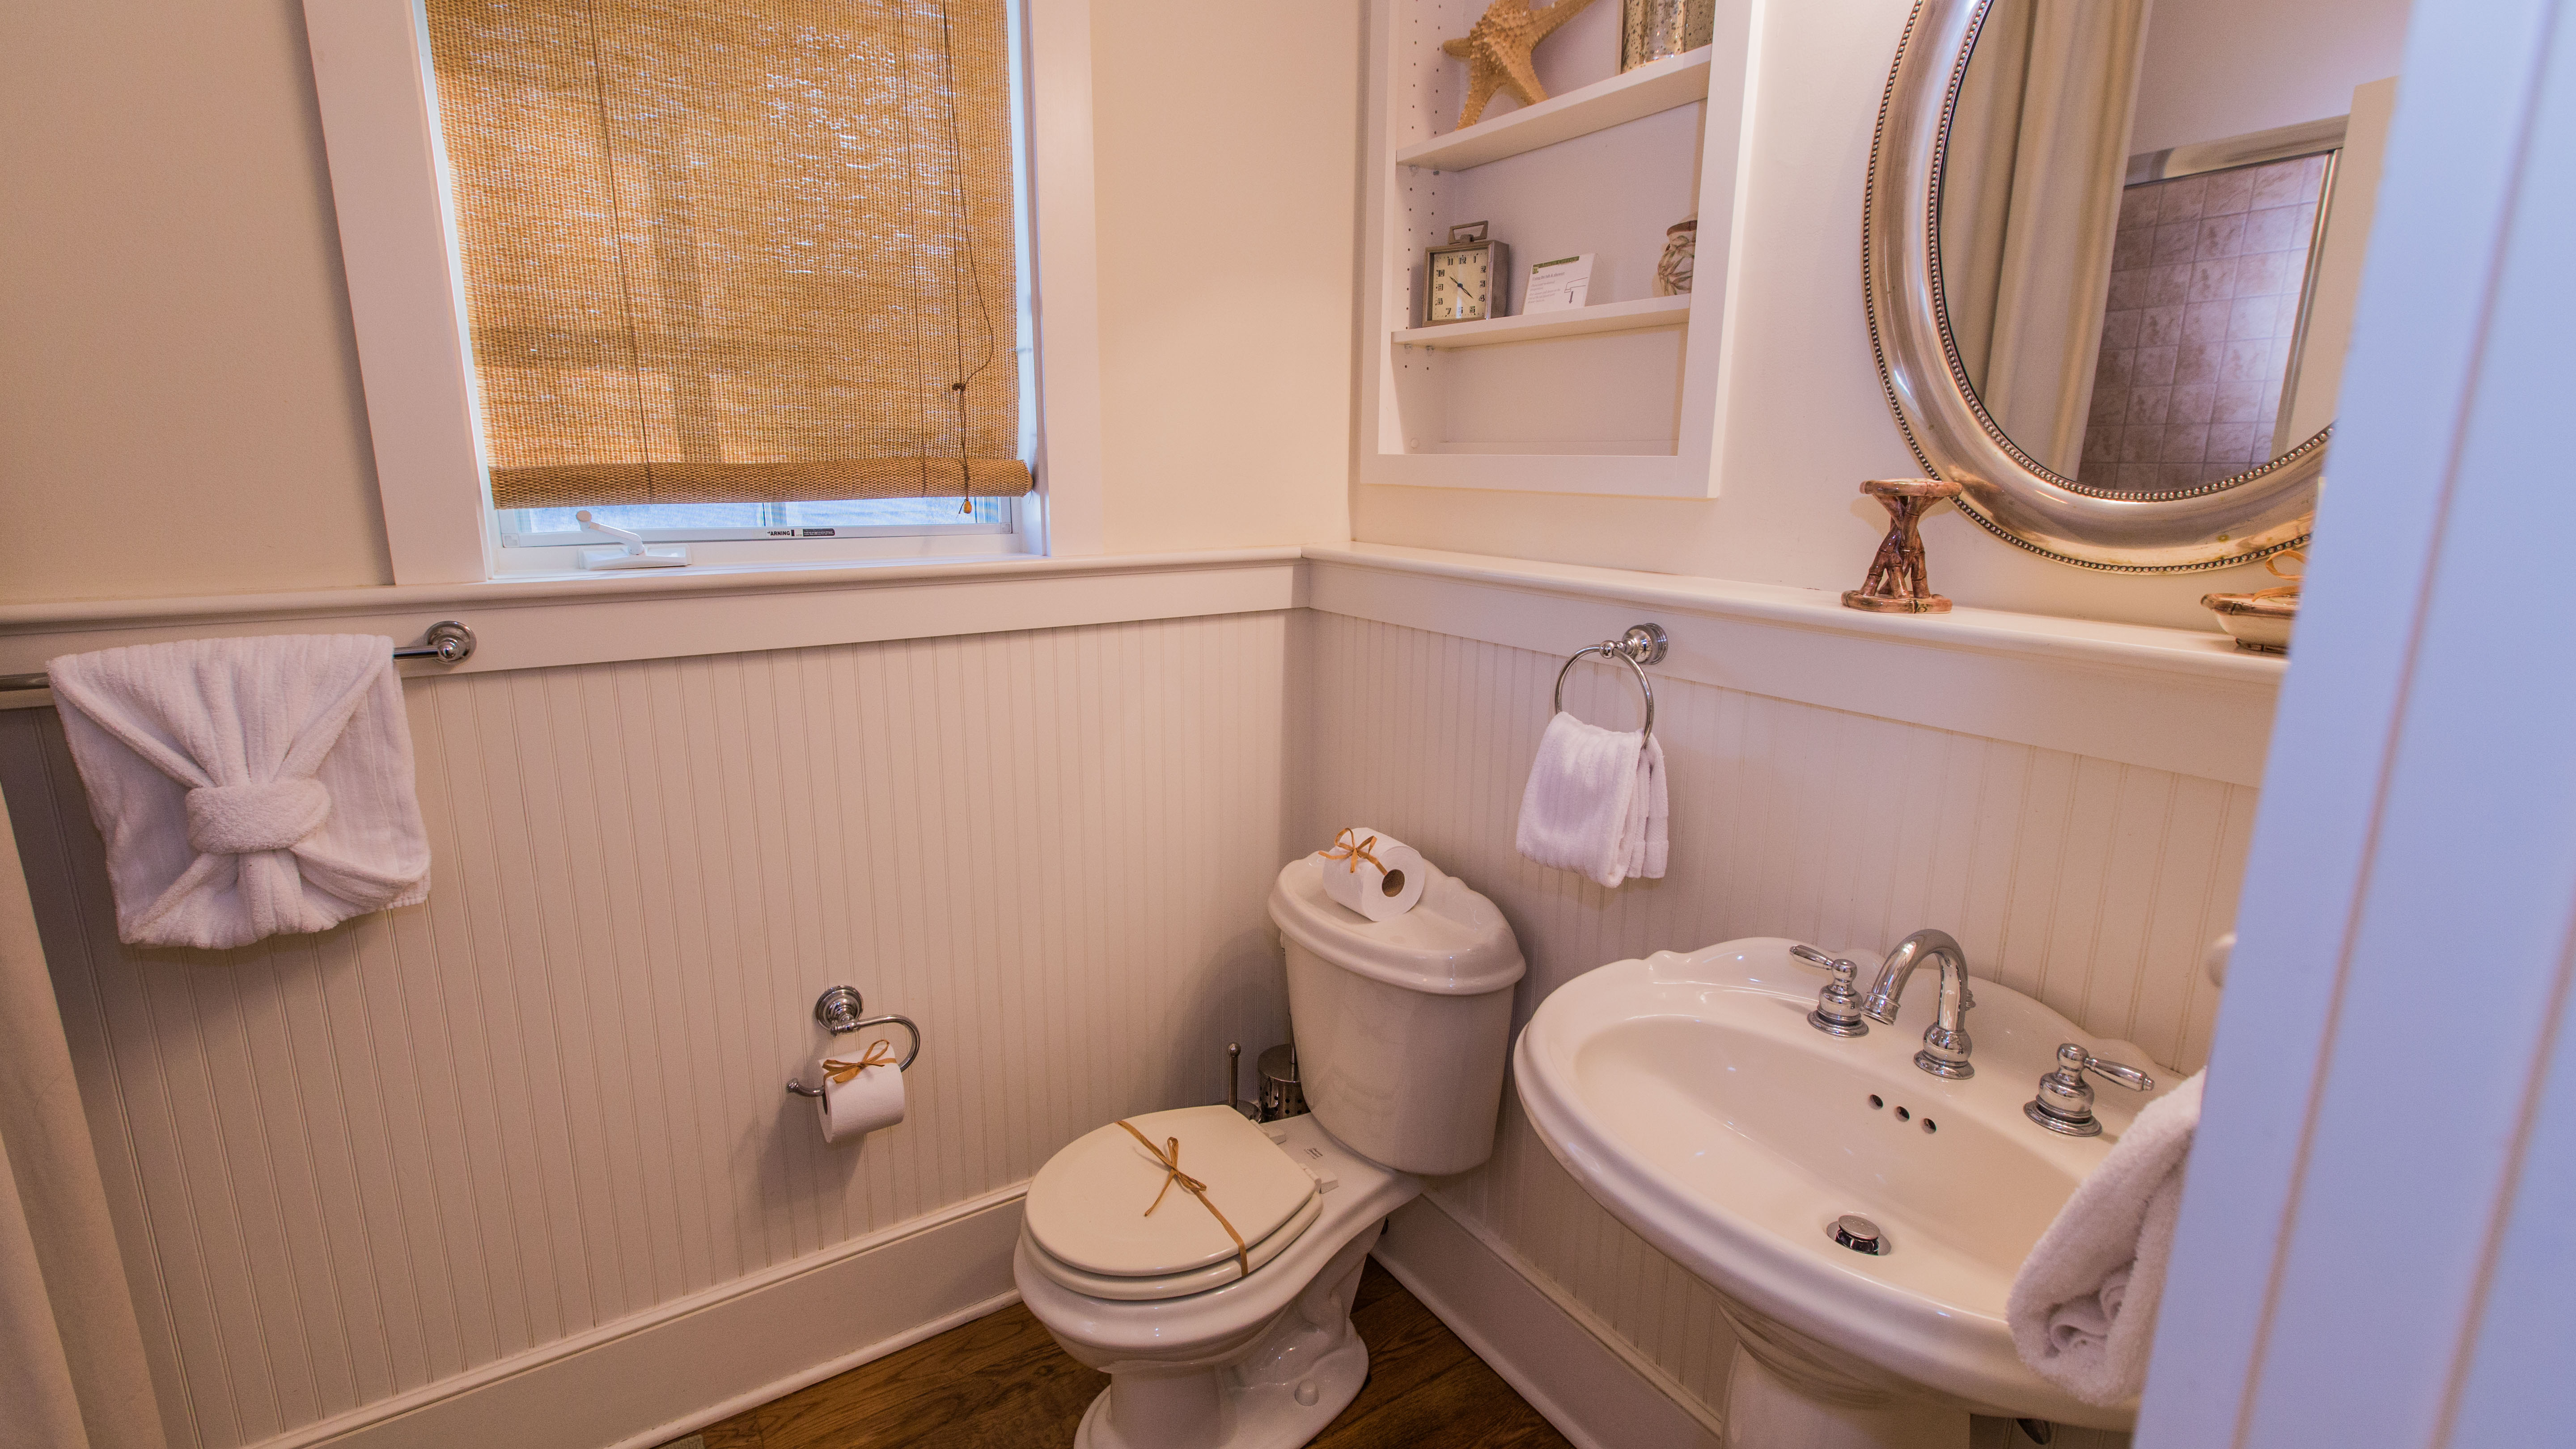 En suite bath features pedestal sink and tub/shower combination